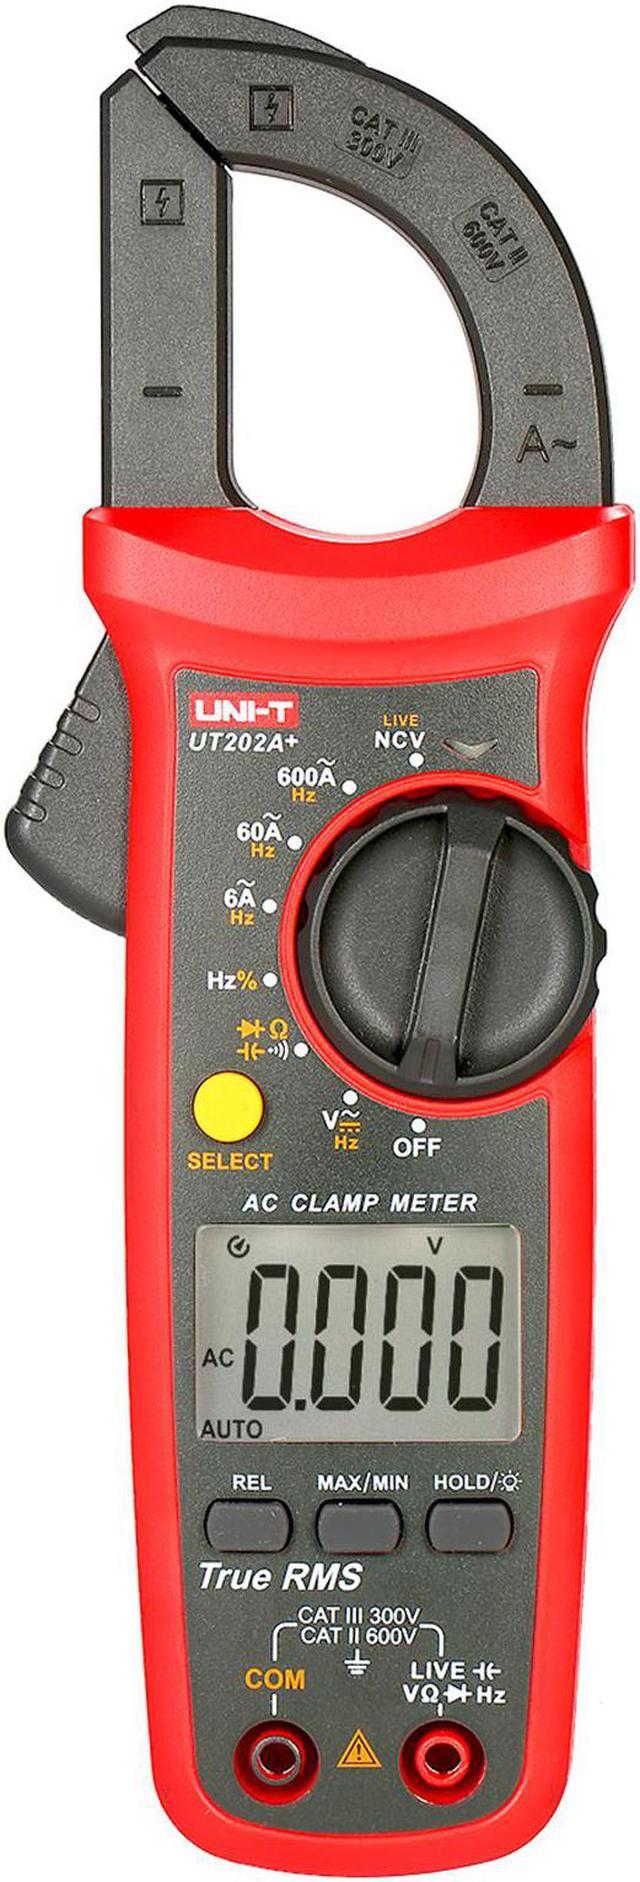 Current Clamp Meter Uni-t, Digital Multimeter Clamp